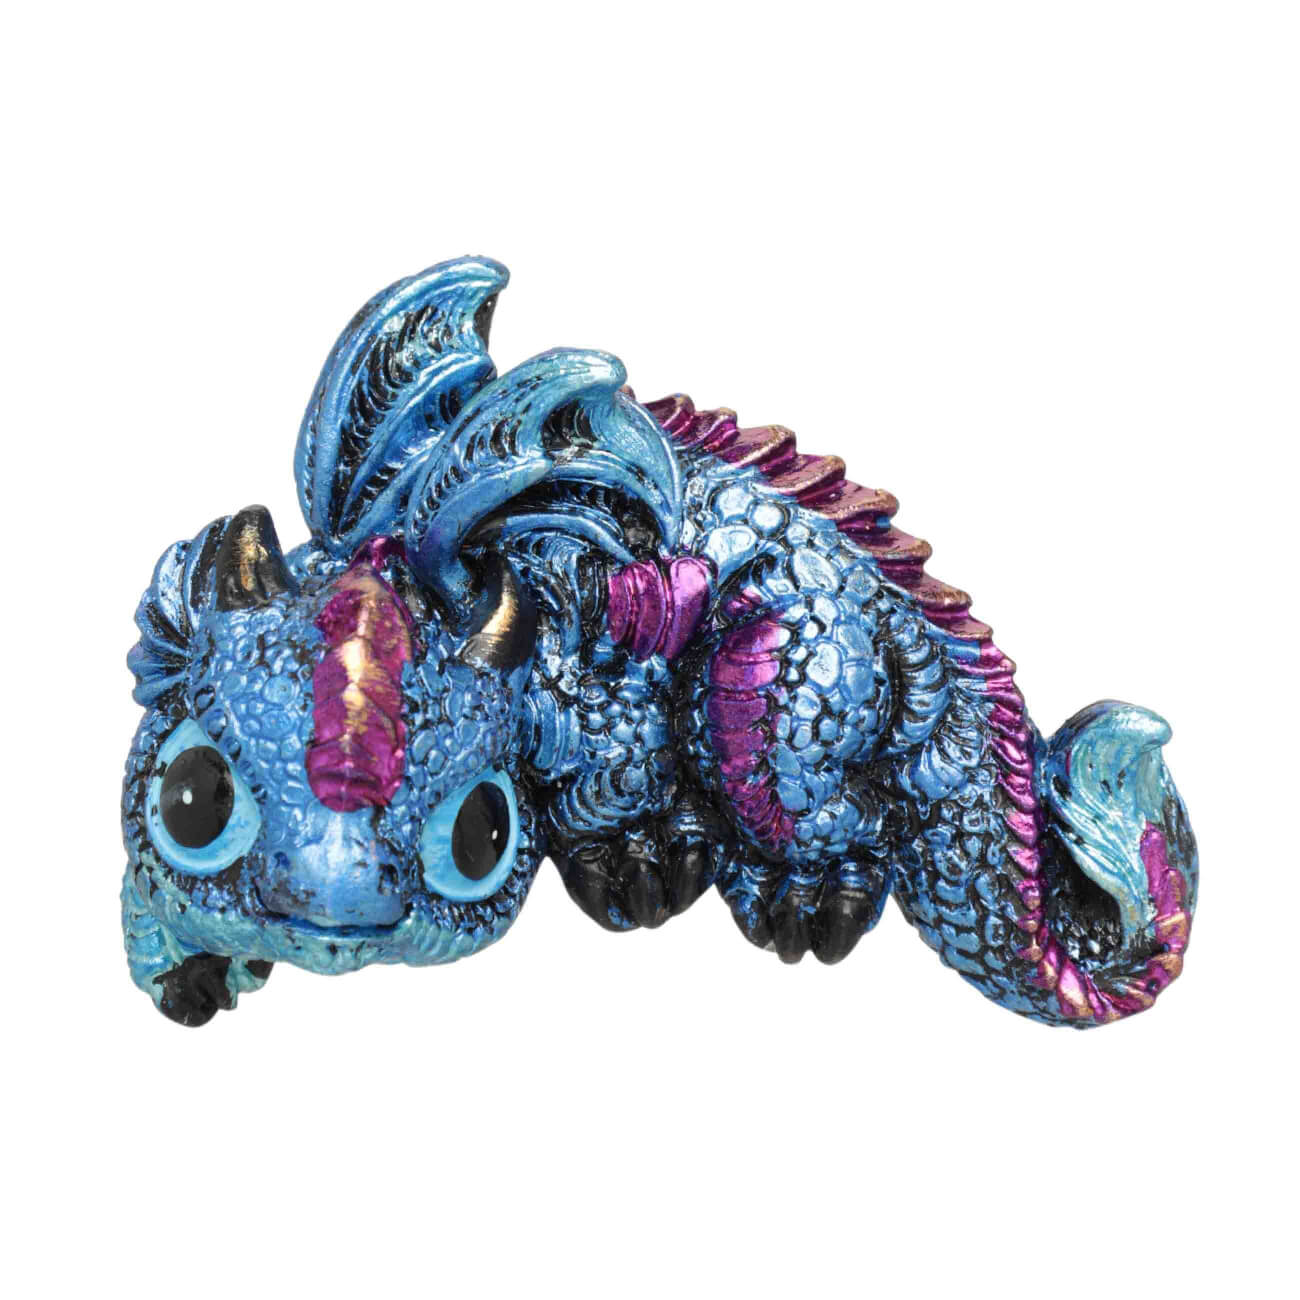 магнит 7 см полирезин синий радужный дракон dragon blu Магнит, 7 см, полирезин, синий радужный, Дракон, Dragon blu